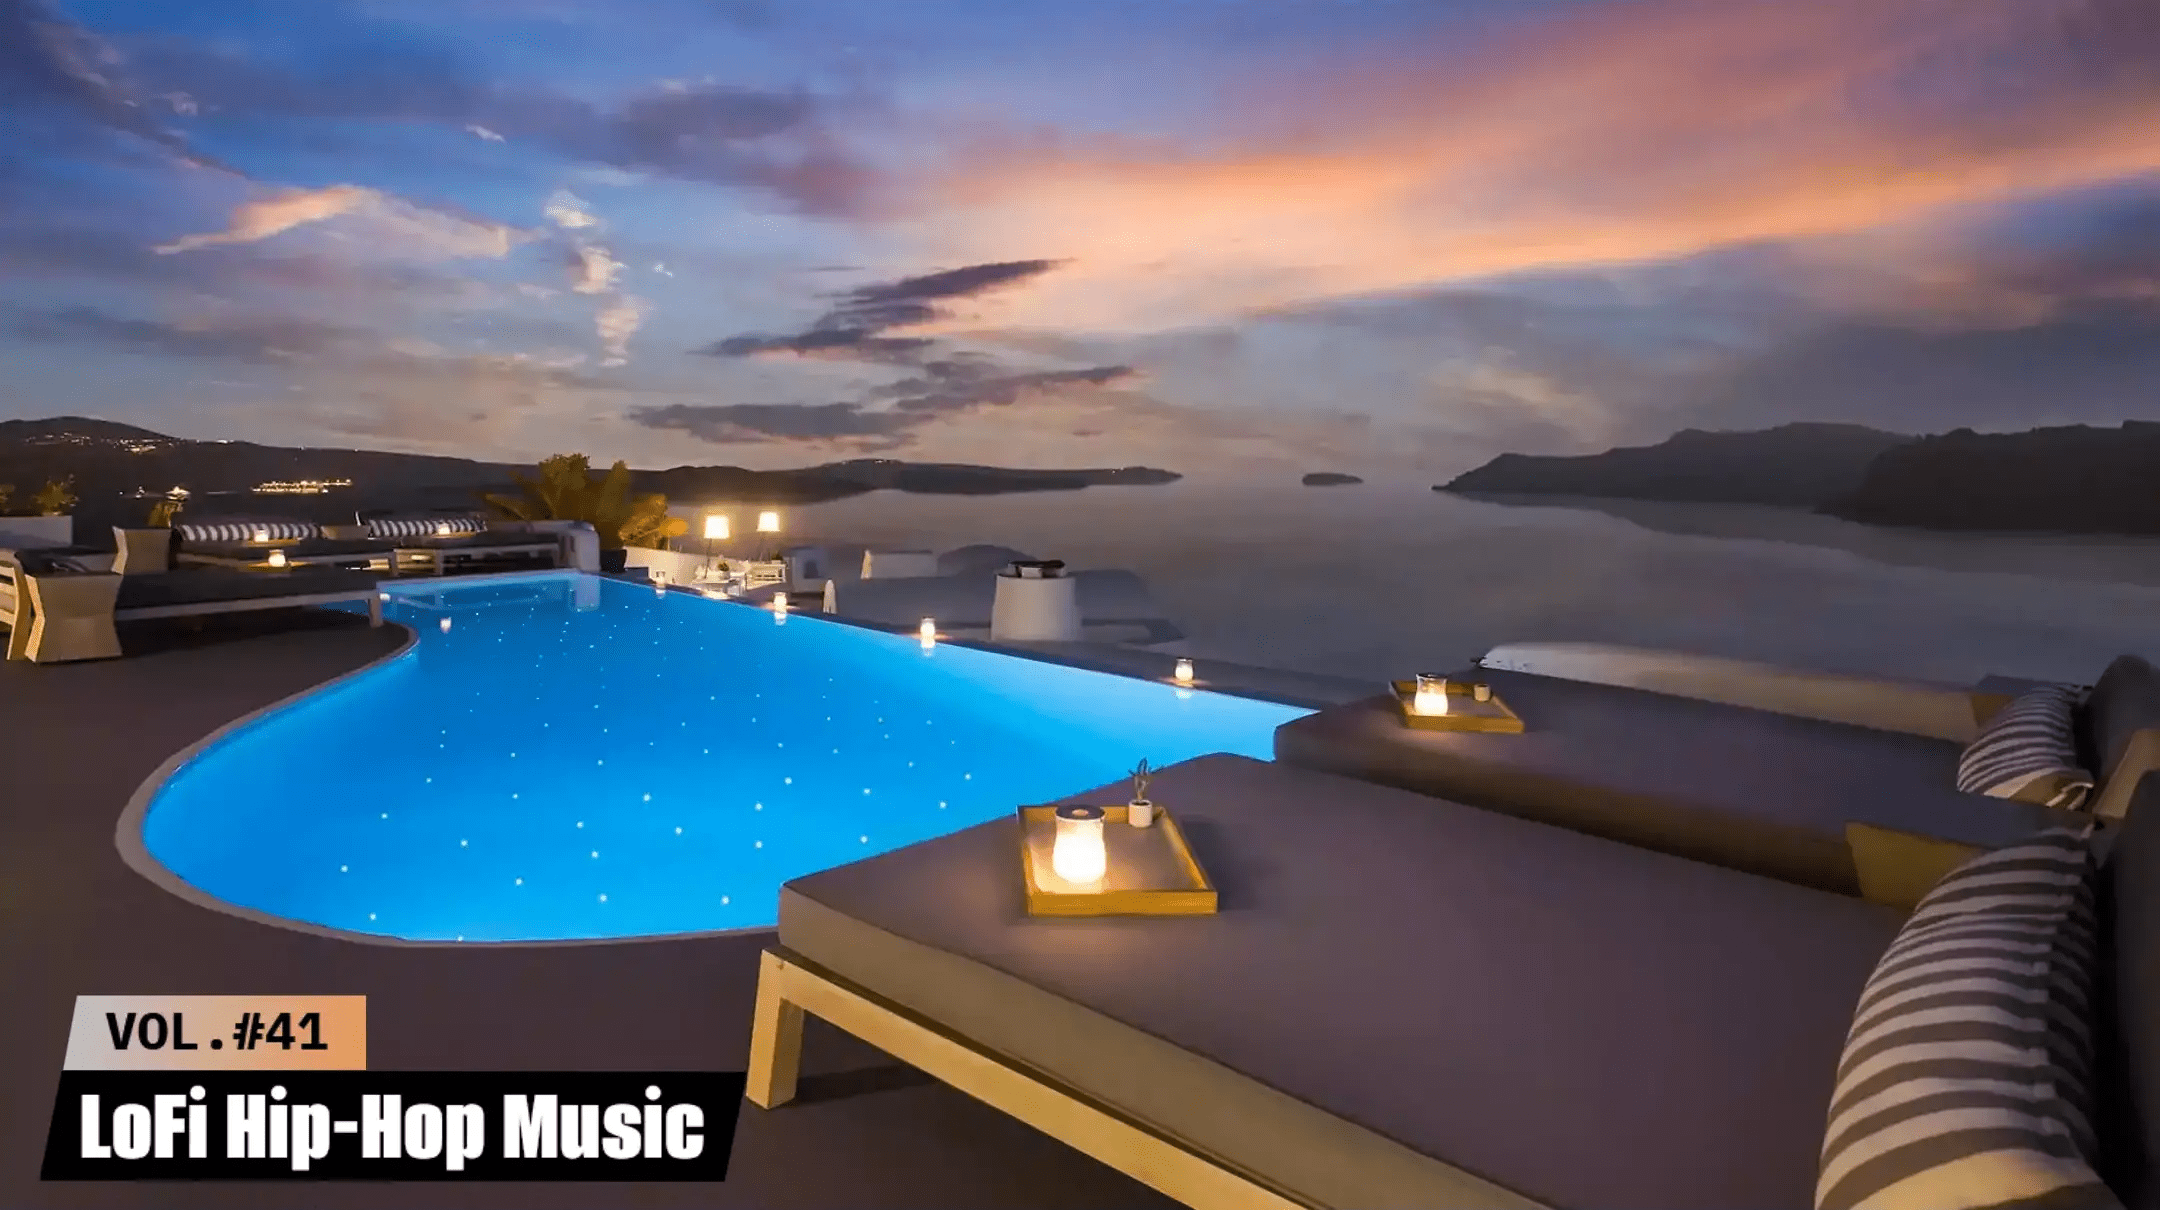 Хороший отель видео. Красивый бассейн. Красивые отели. Море с отелем. Бассейн с красивым видом.